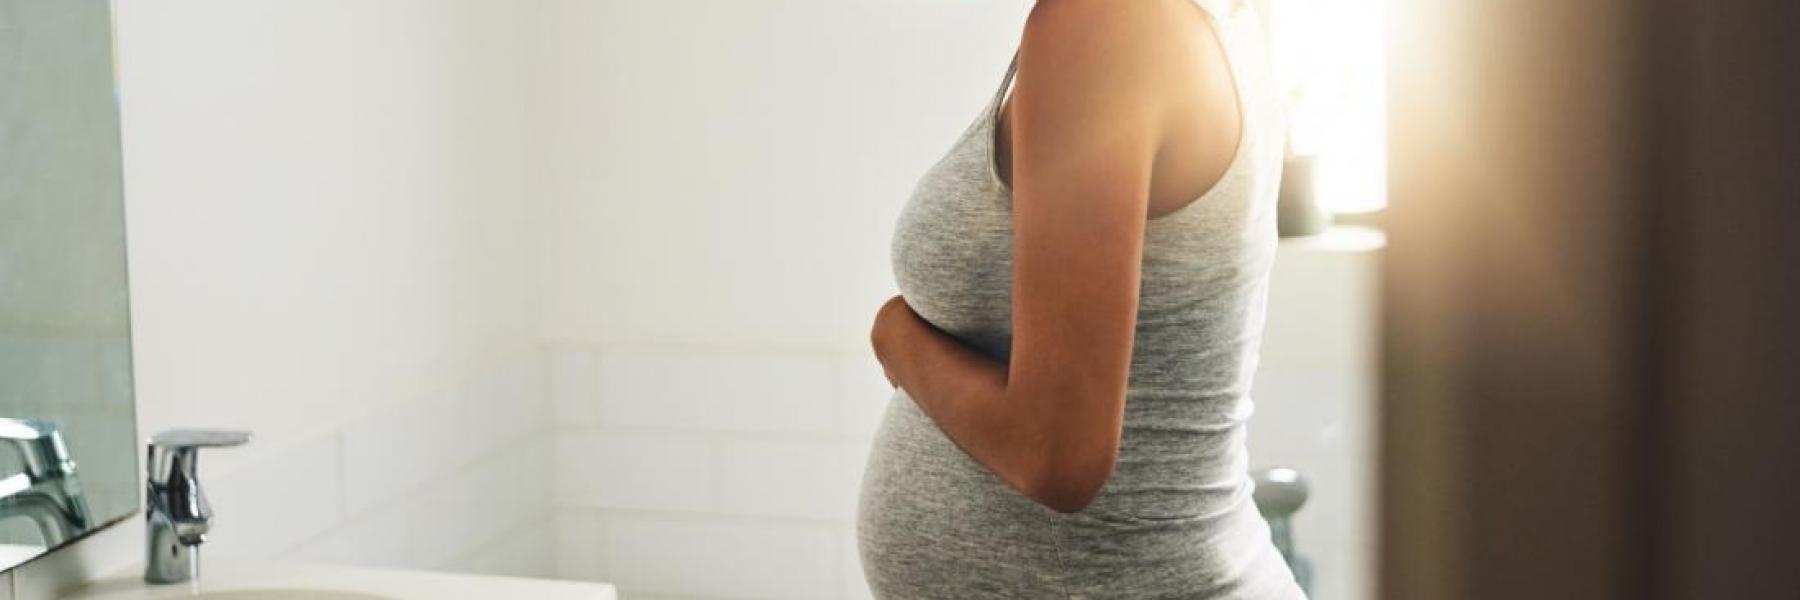 نصائح غذائية للحامل في الشهر الثاني